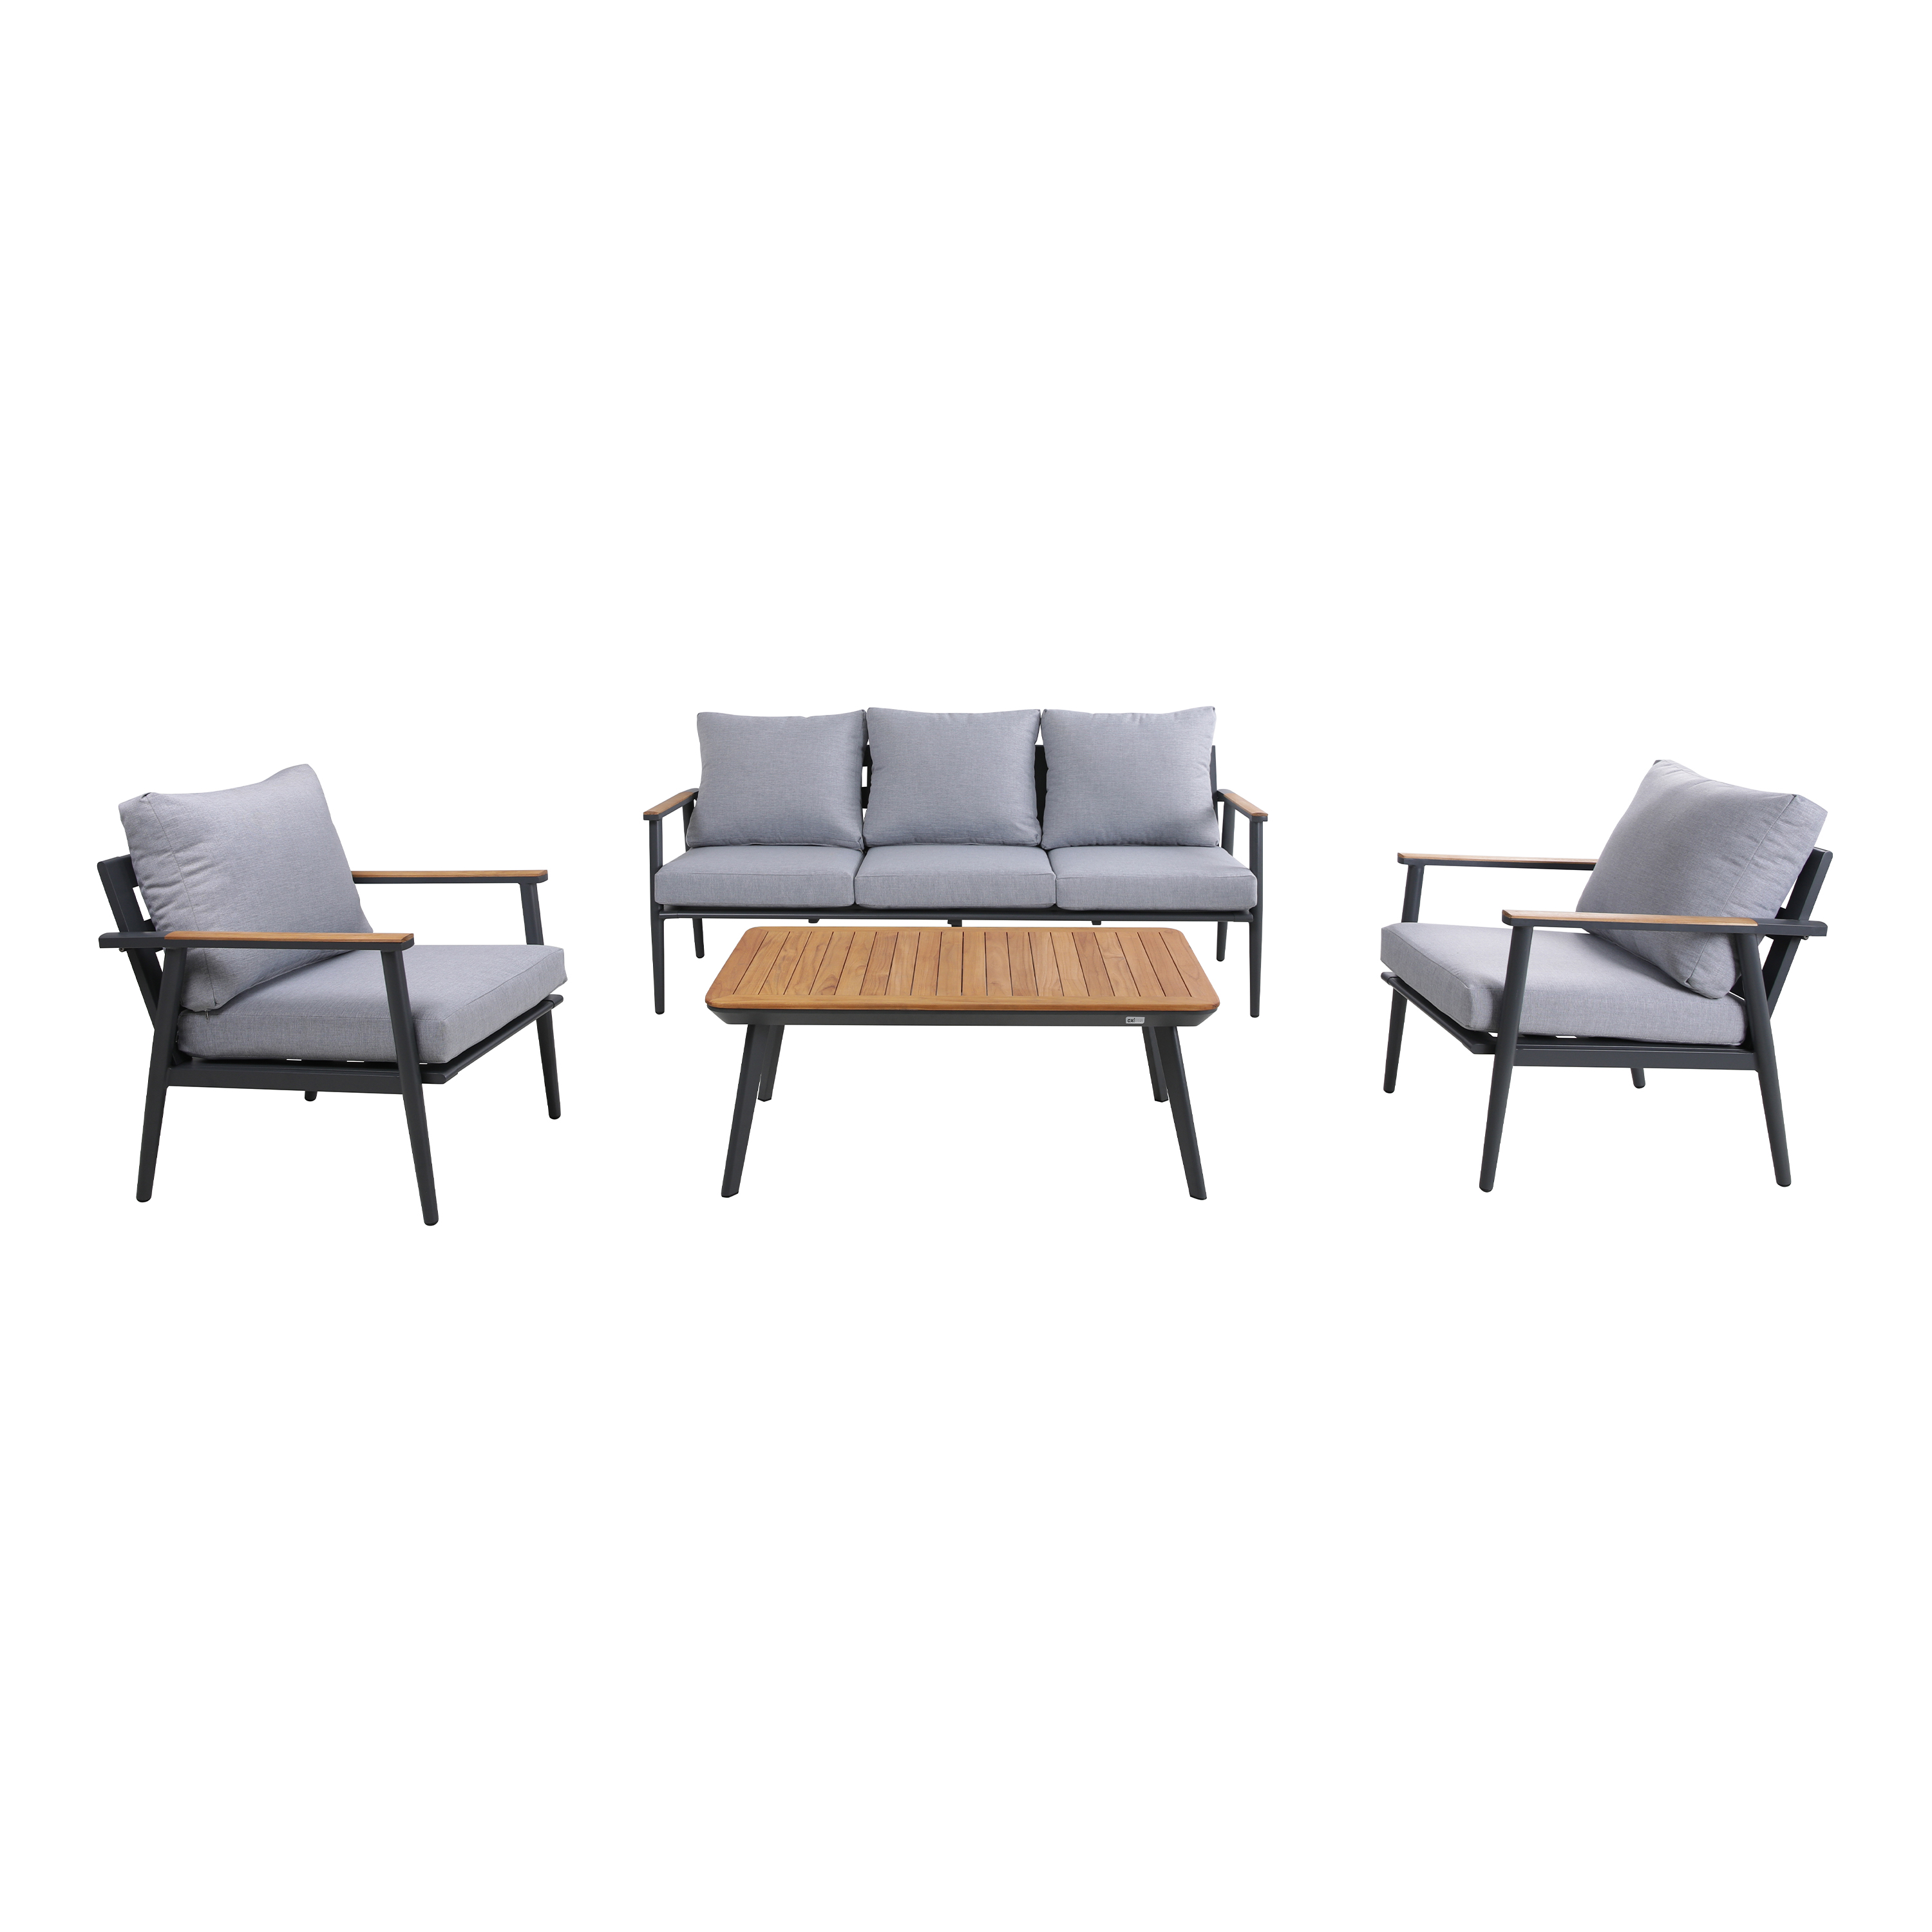 AXI Bibi Lounge Set 4-teilig. mit Bank, Tisch und zwei Stühlen – Anthrazit und Teak